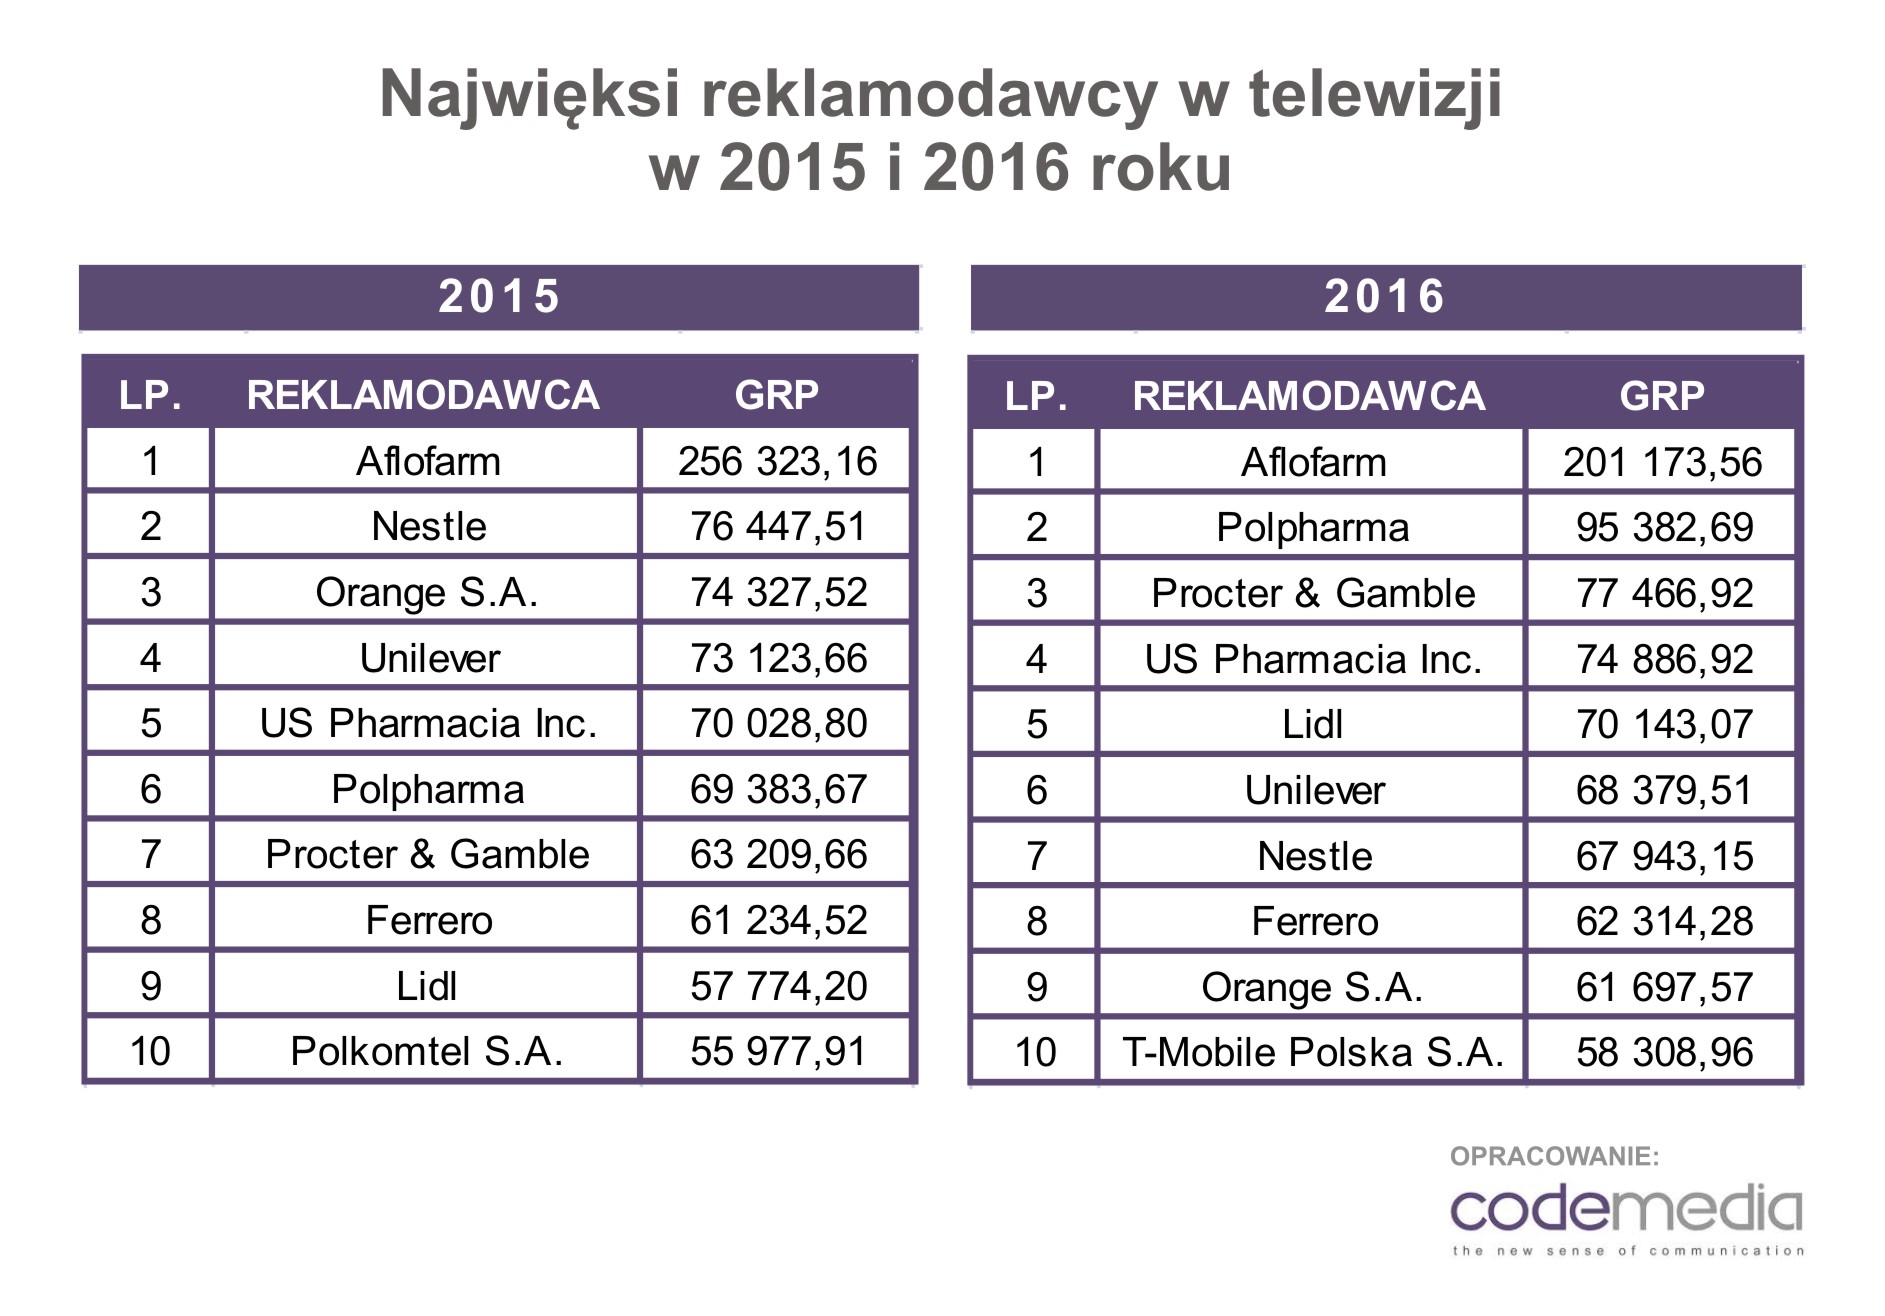 Telewizja lekami stoi. Najwięksi reklamodawcy w 2016 roku Codemedia Codemedia najwięksi reklamodawcy w tv w 2016 i 2015